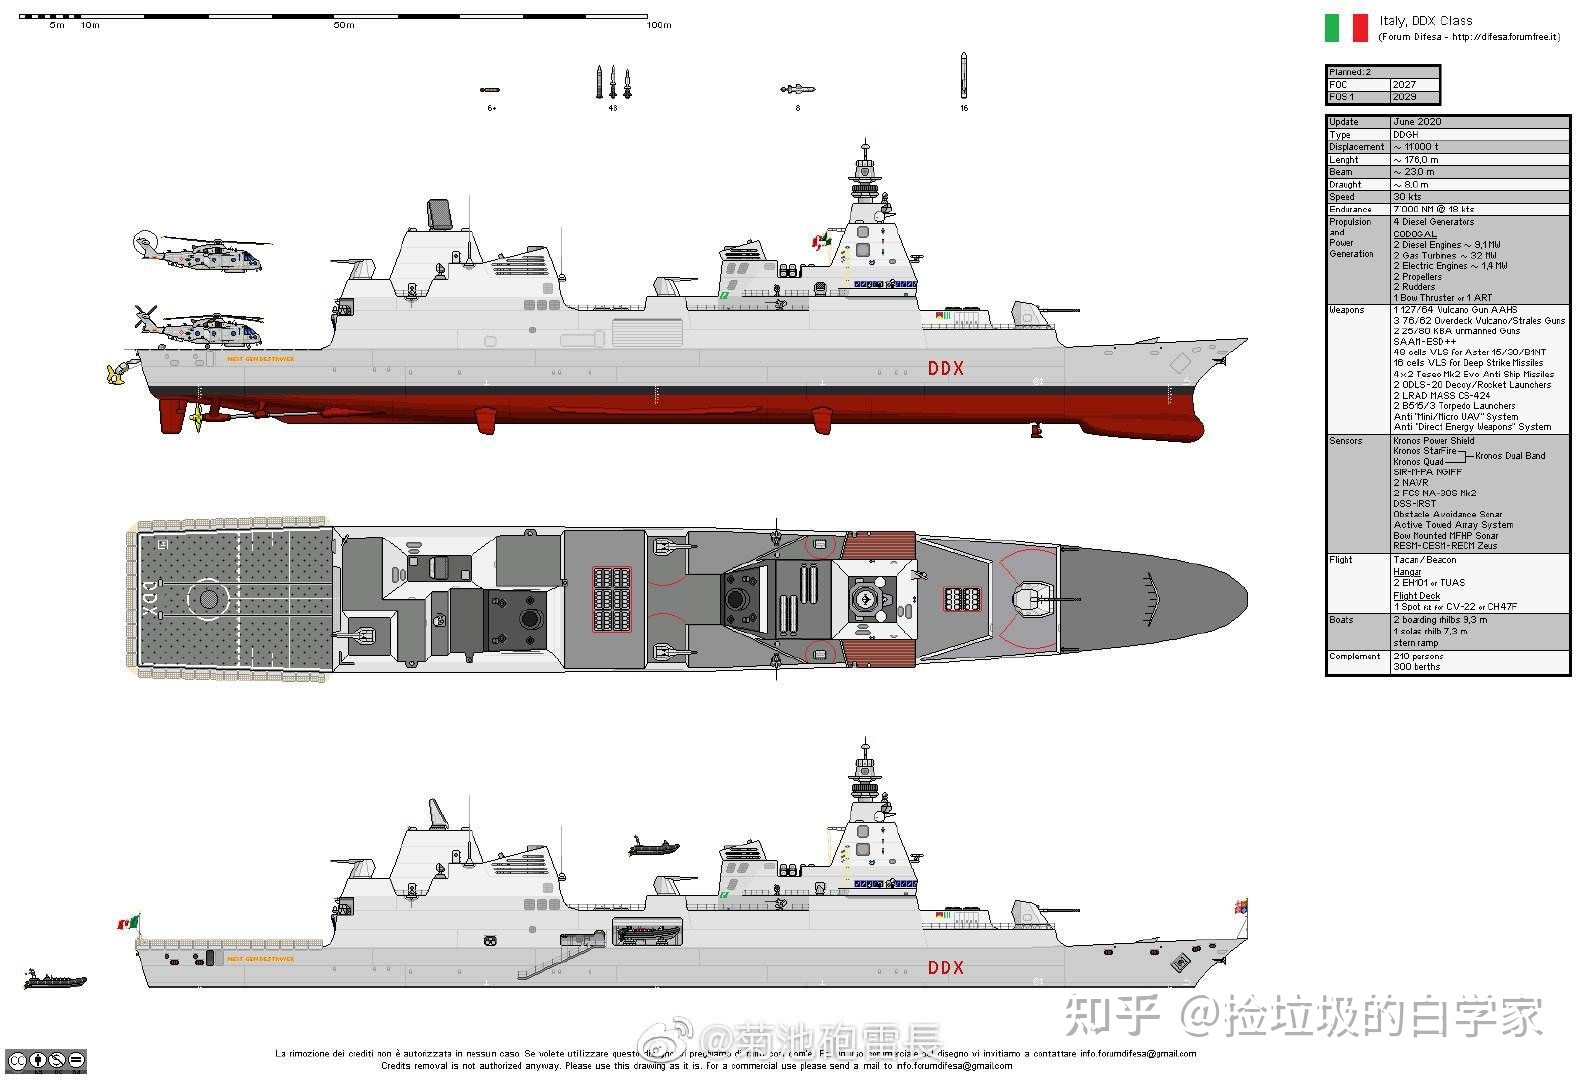 美国海军新一代沃尔特级驱逐舰，隐身宙斯盾舰，性能超越尖端科技


